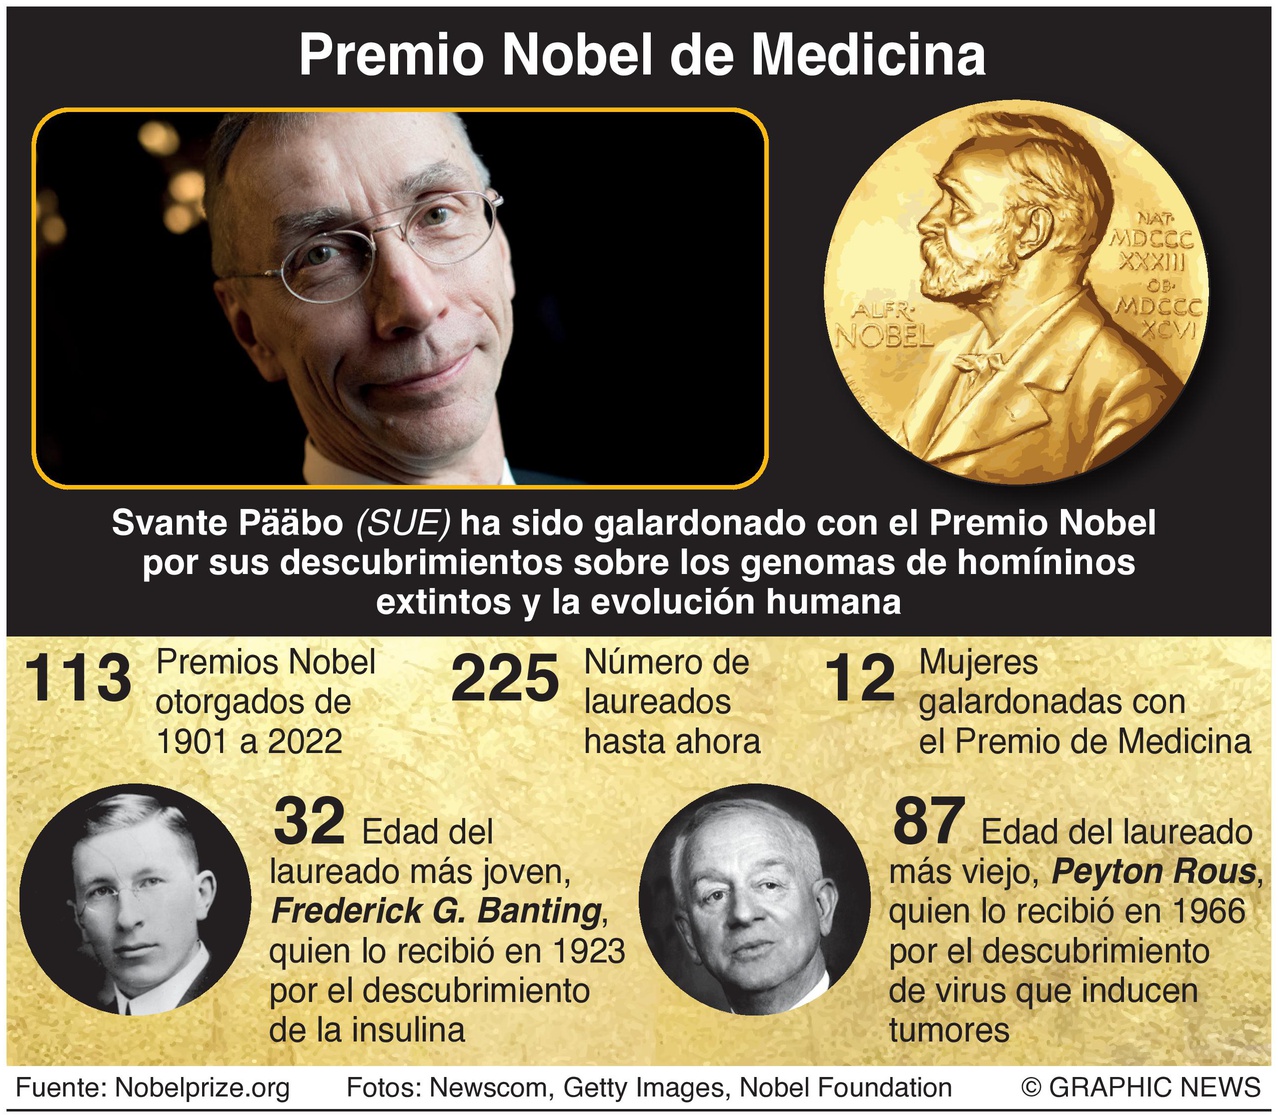 El Nobel de Medicina, a Svante Pääbo